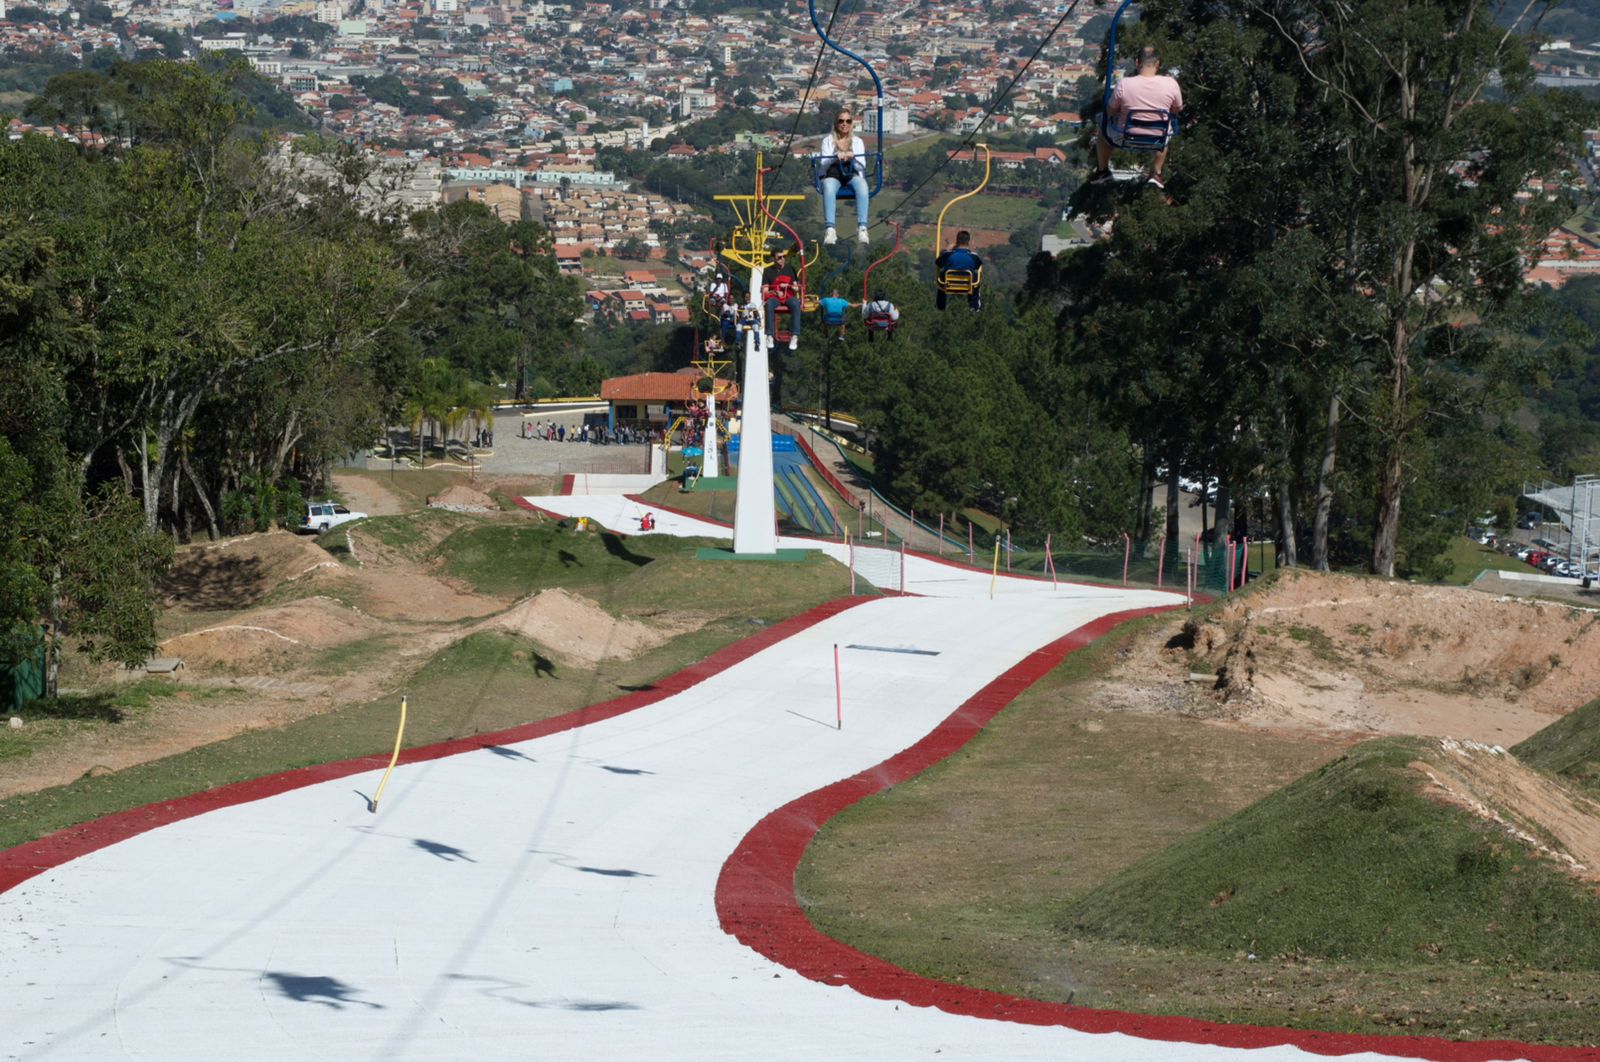 Ski e snowboard são algumas das atrações do Ski Park, em São Roque (SP)